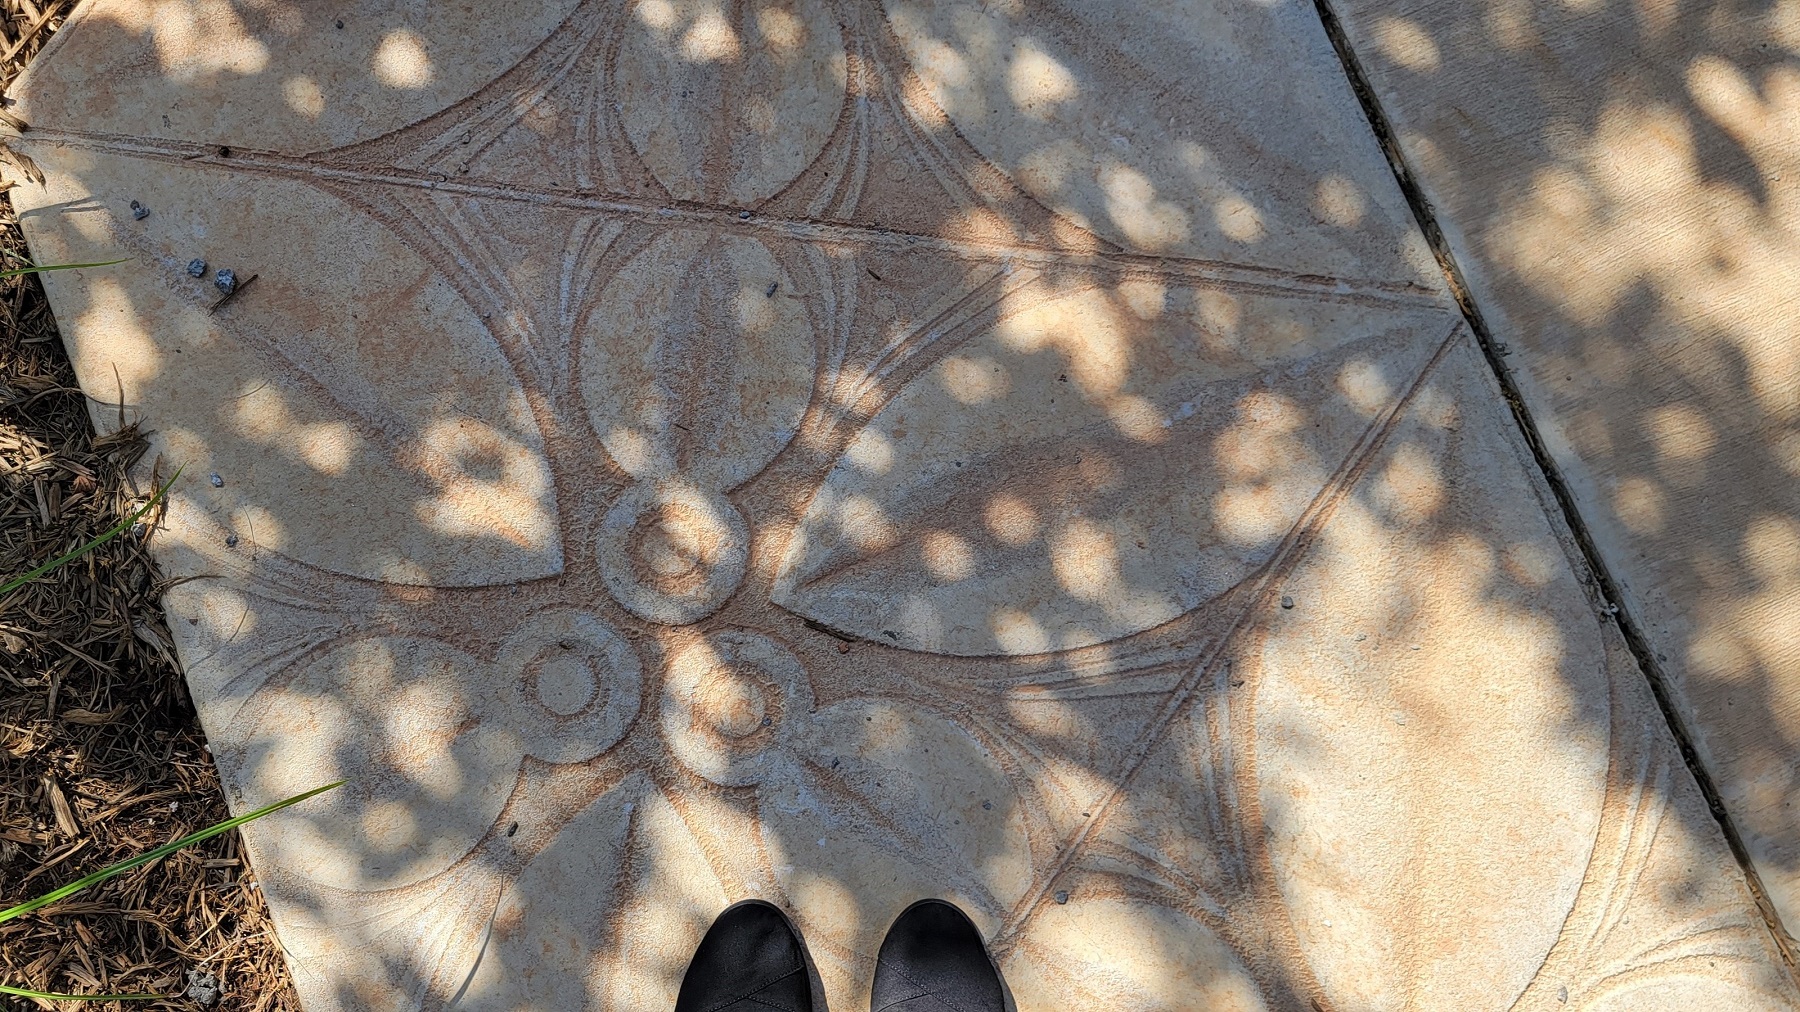 imprinted concrete on plaza walkway